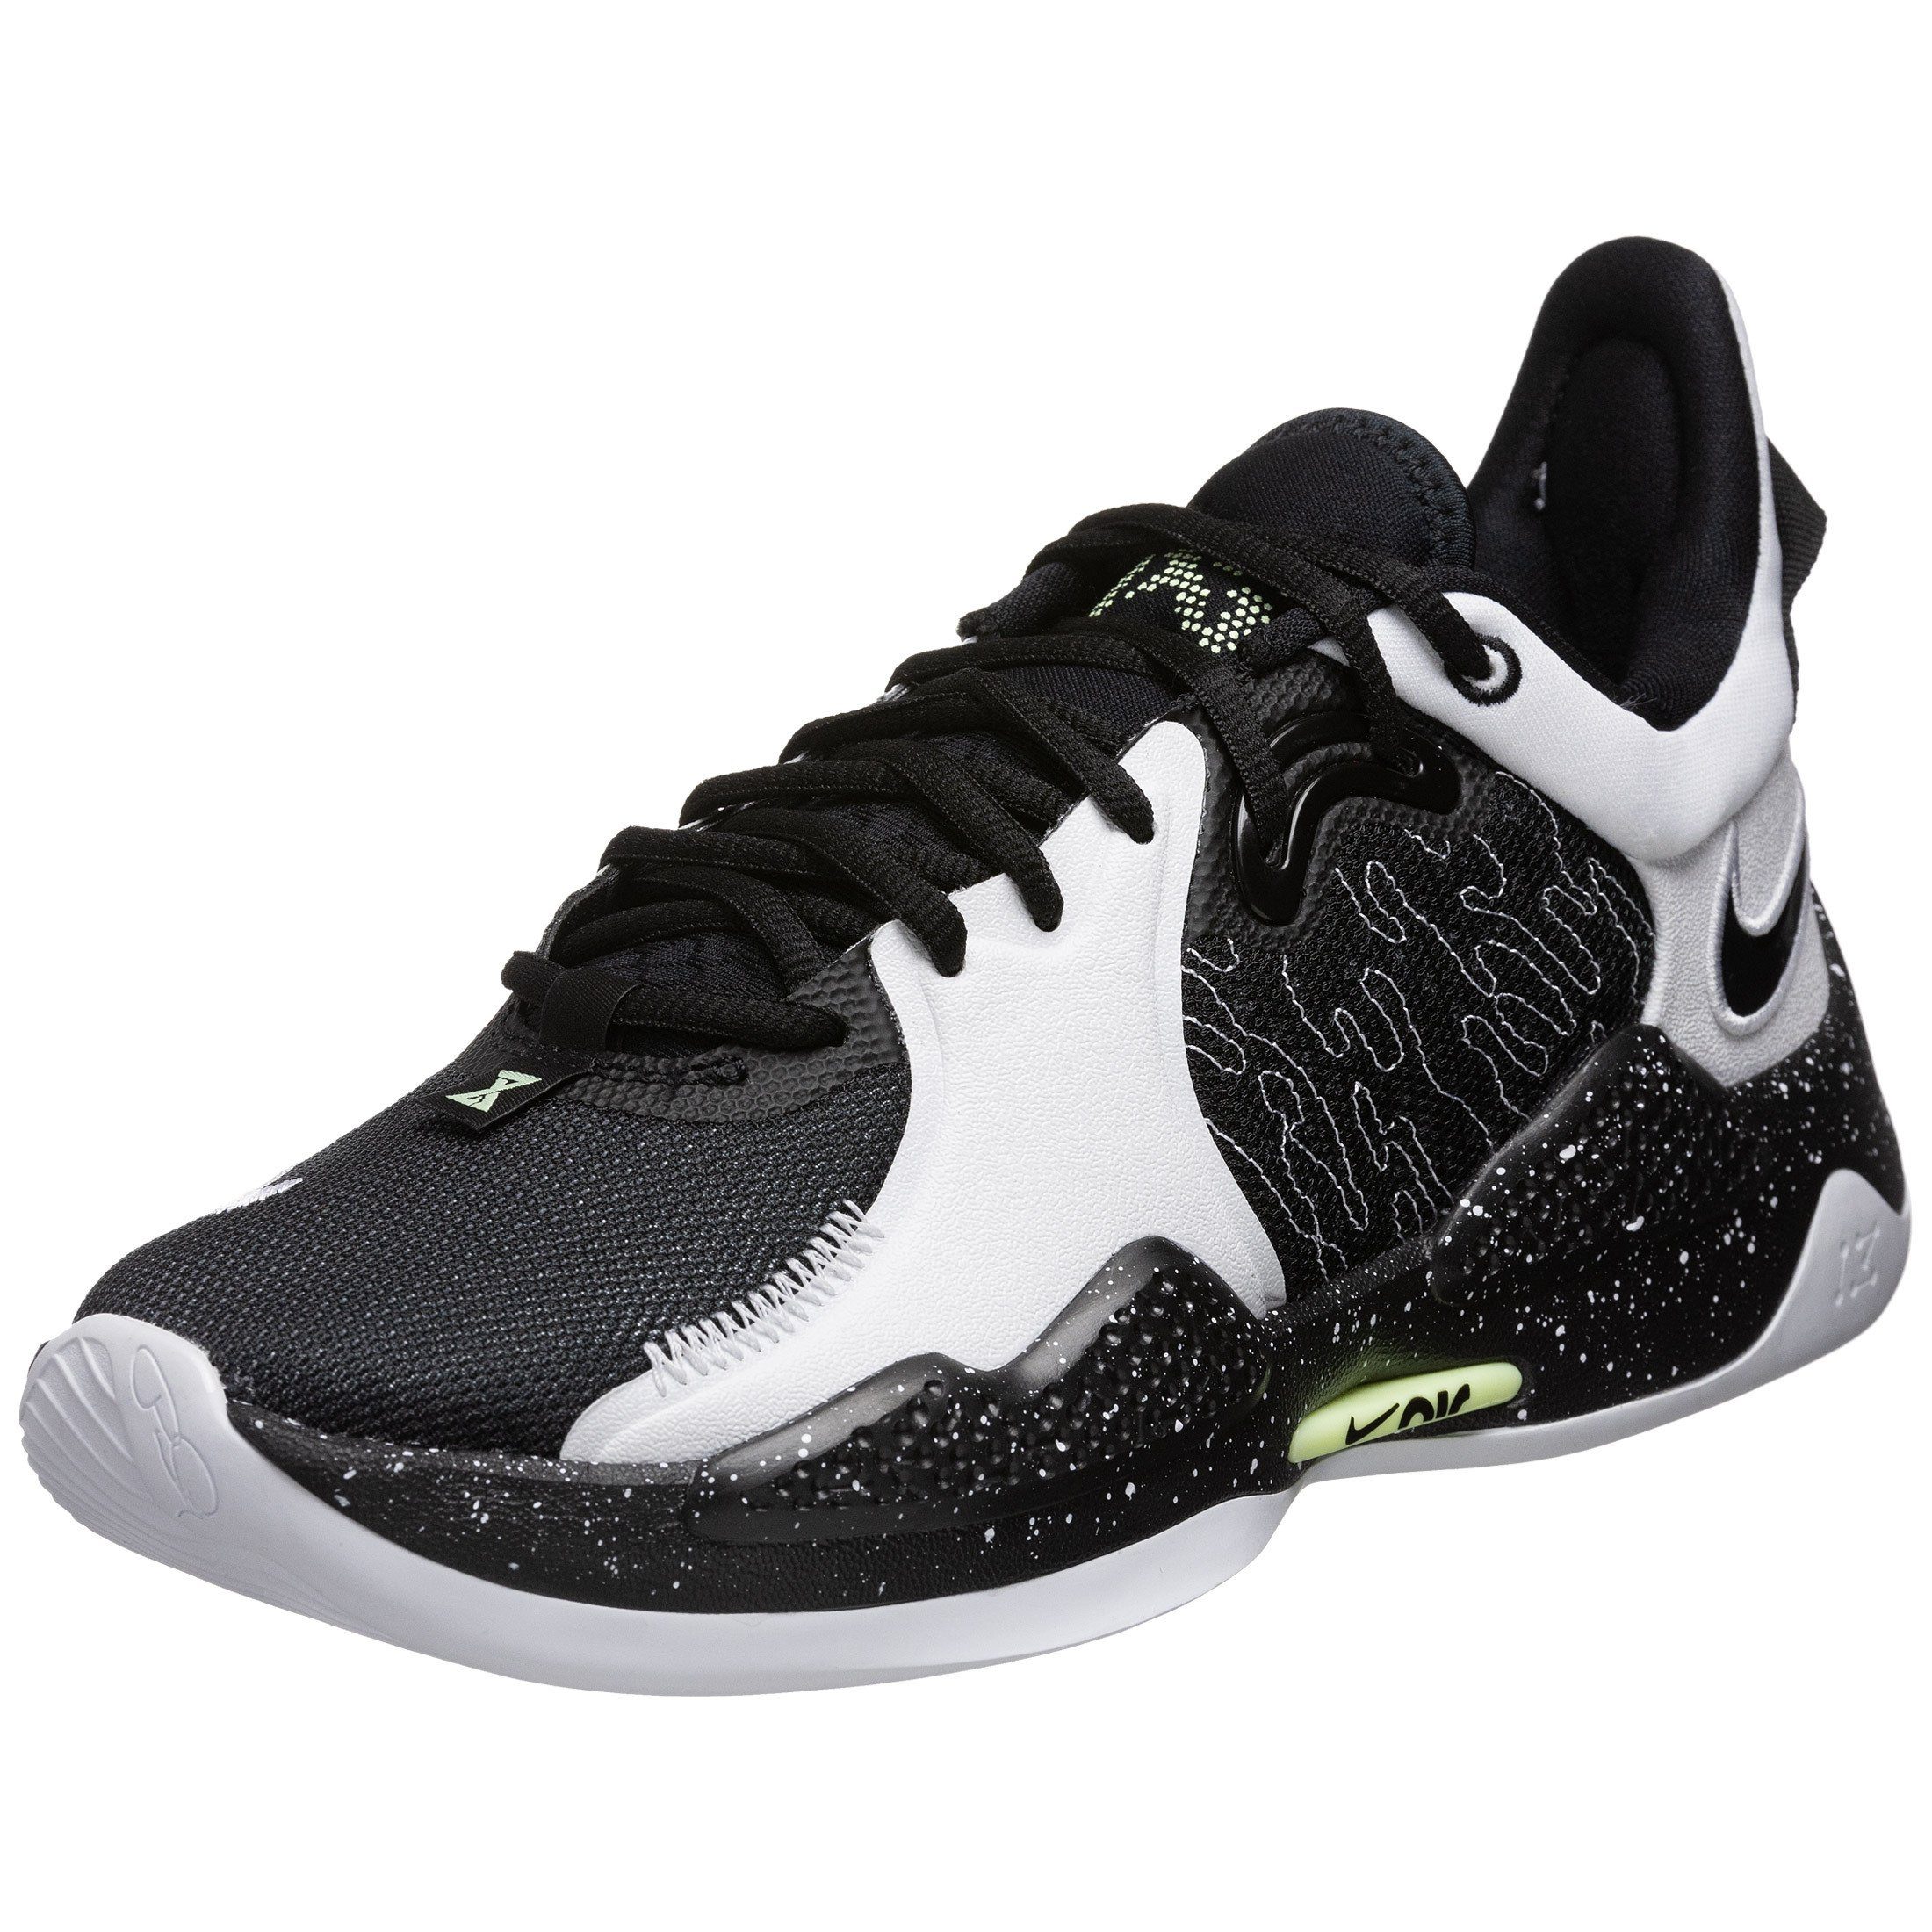 Nike »Pg 5« Basketballschuh online kaufen | OTTO